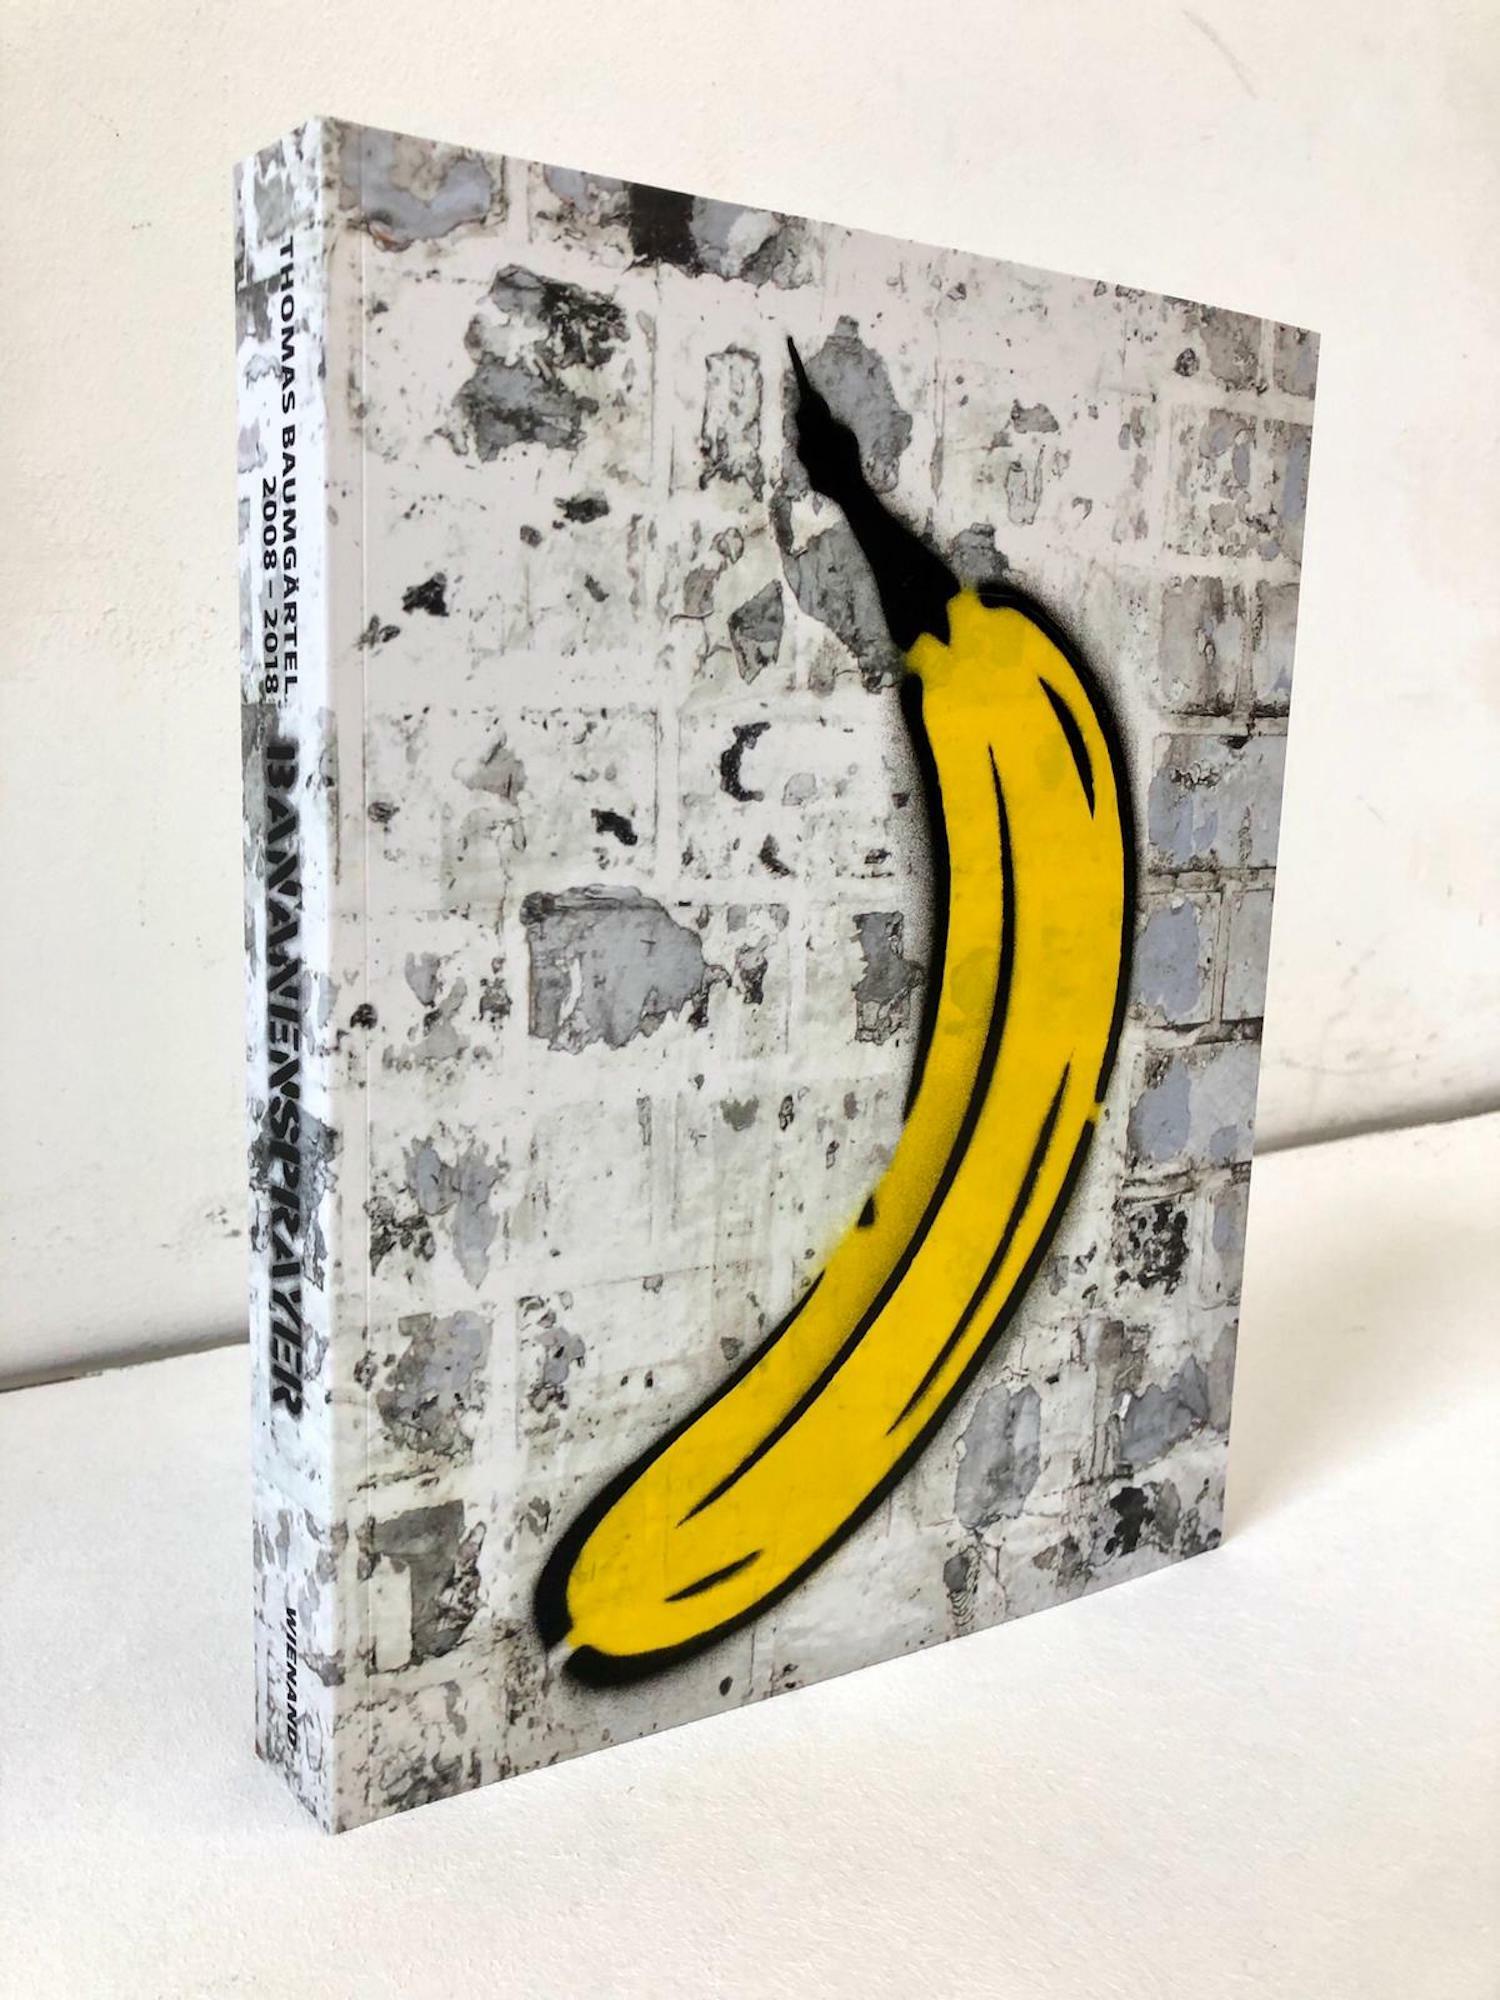 Objet "Livre avec banane pulvérisée à la main" (2019) von Thomas Baumgärtel